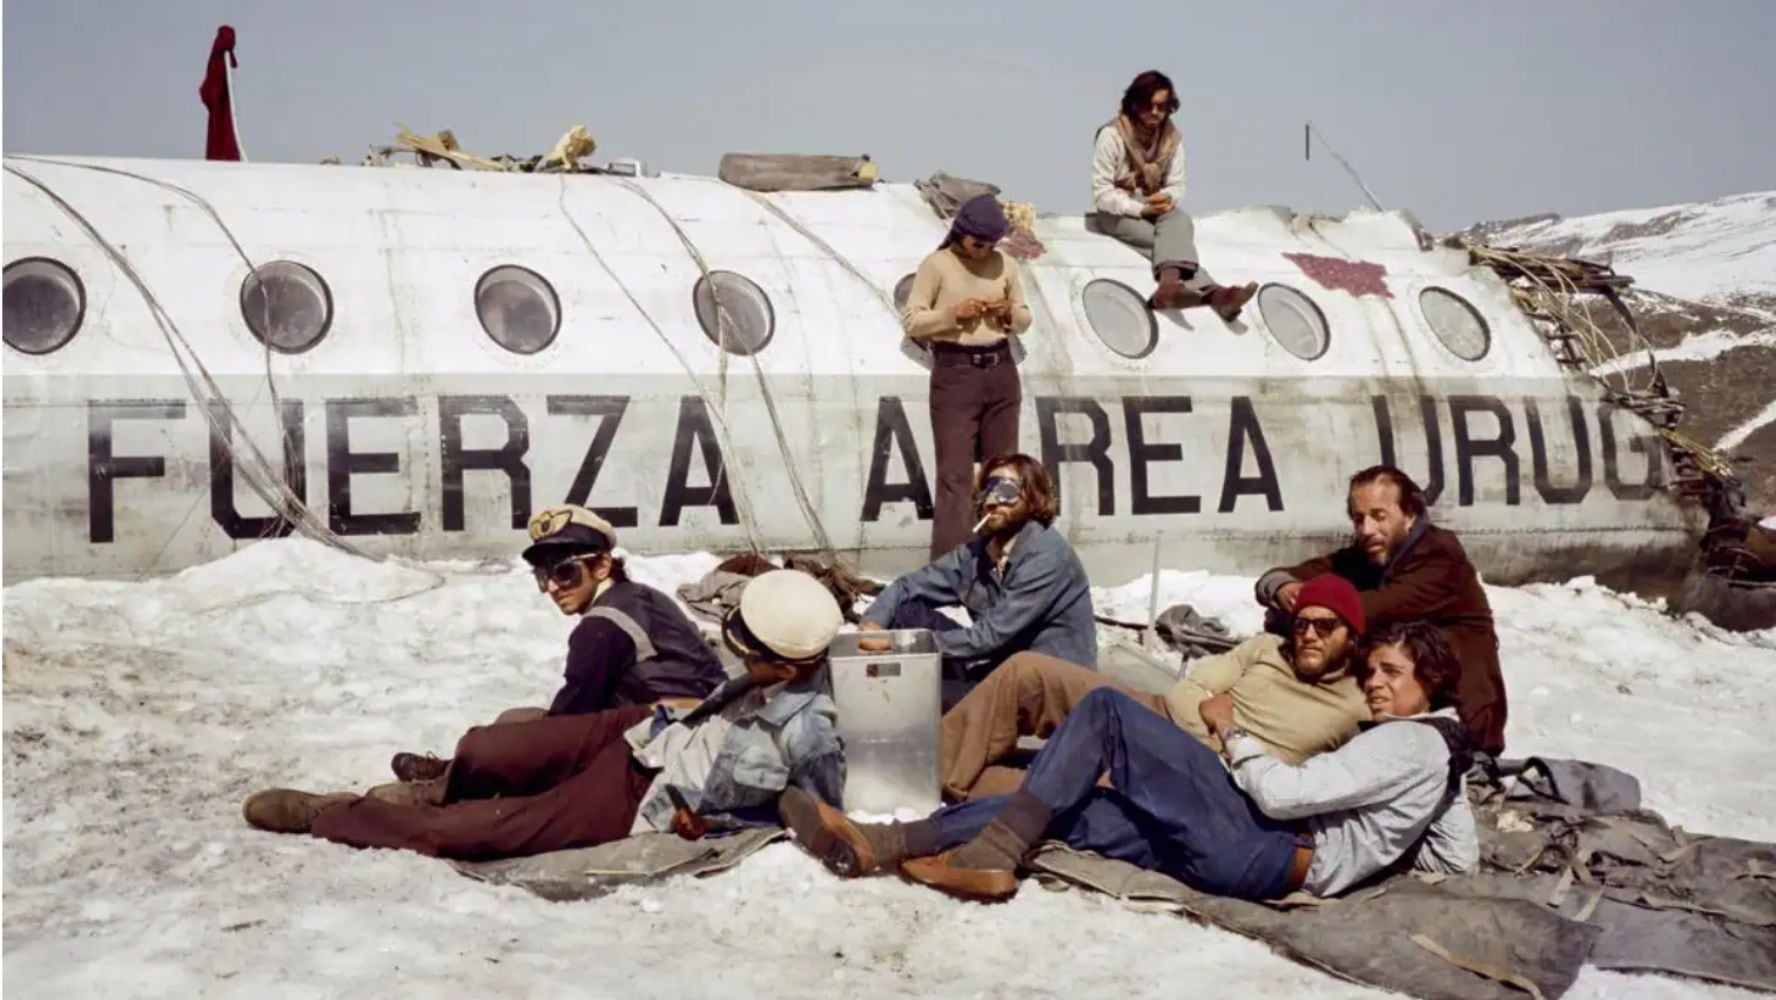 'La sociedad de la nieve' se inspira en la tragedia ocurrida el 13 de octubre de 1972 en la cordillera de los Andes. (Foto: YouTube Netflix Latinoamerica)